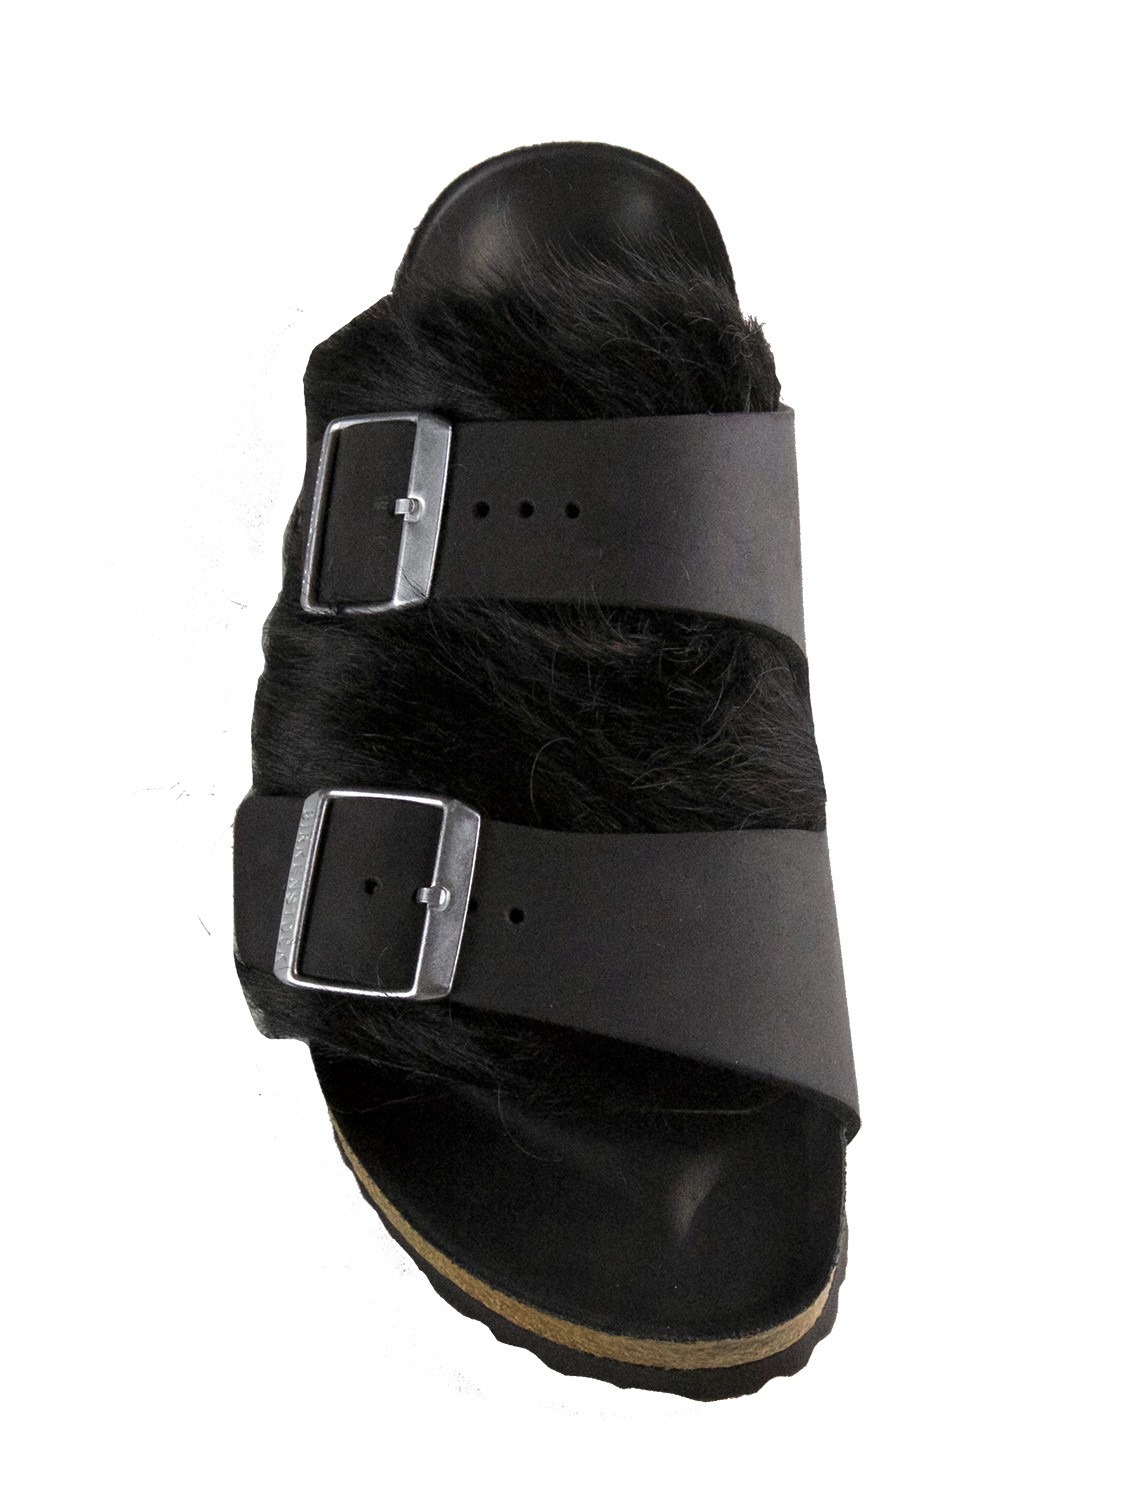 shop Birkenstock Sales Scarpe: Sandalo Birkenstock , modello Arizona, due fasce regolabili, in pelle, dettagli in metallo, pelliccia sopra.

Composizione: 80% pelle, 20% pelliccia.
Suola: 70% gomma, 30% sughero. number 1019